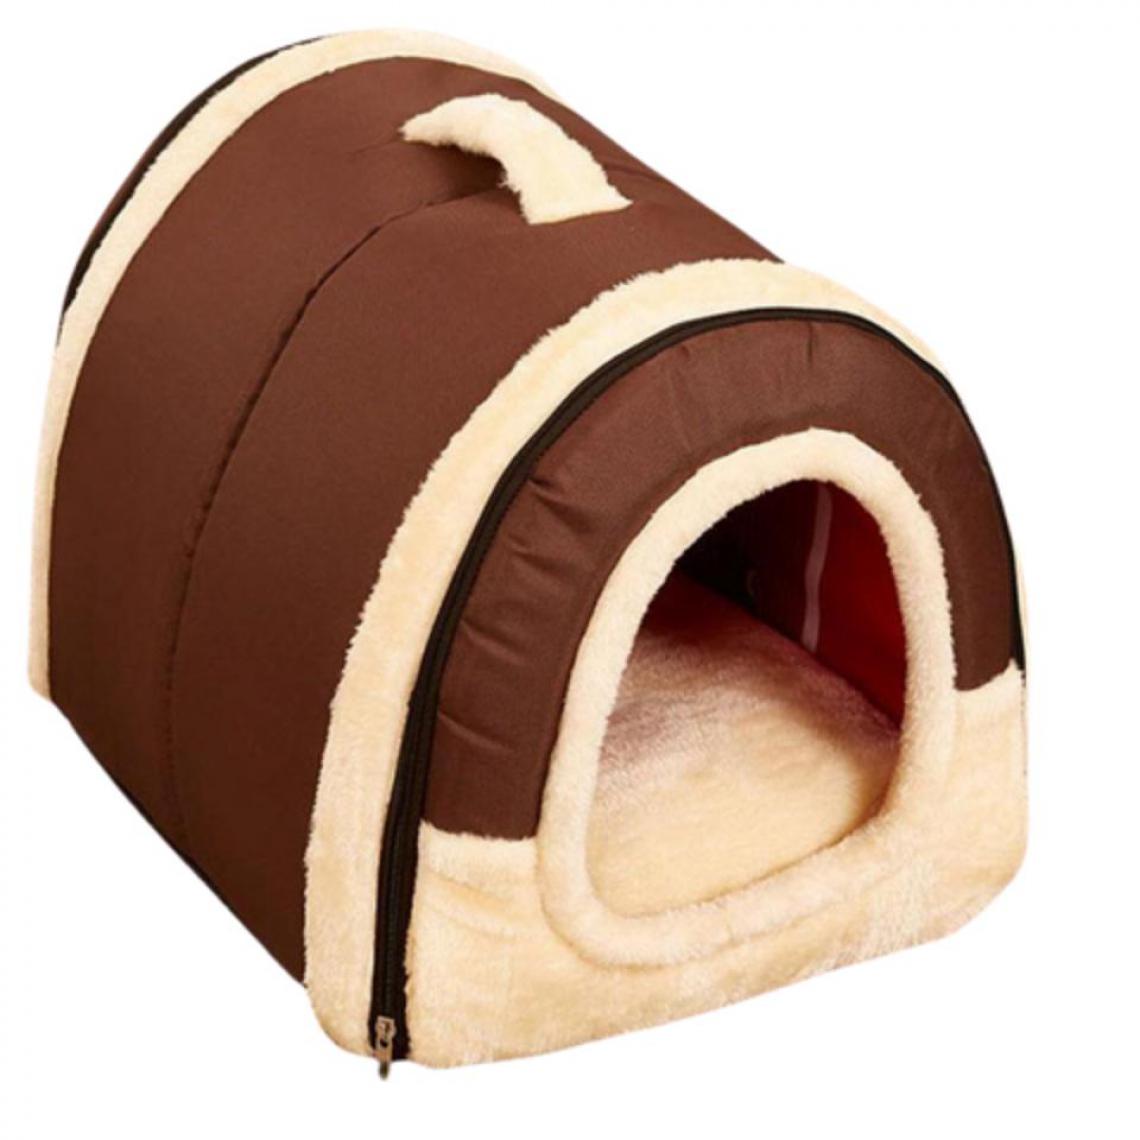 Justgreenbox - Lit de maison pour animaux de compagnie pour petits animaux, Coffee, S 35x30x28cM - Niche pour chien